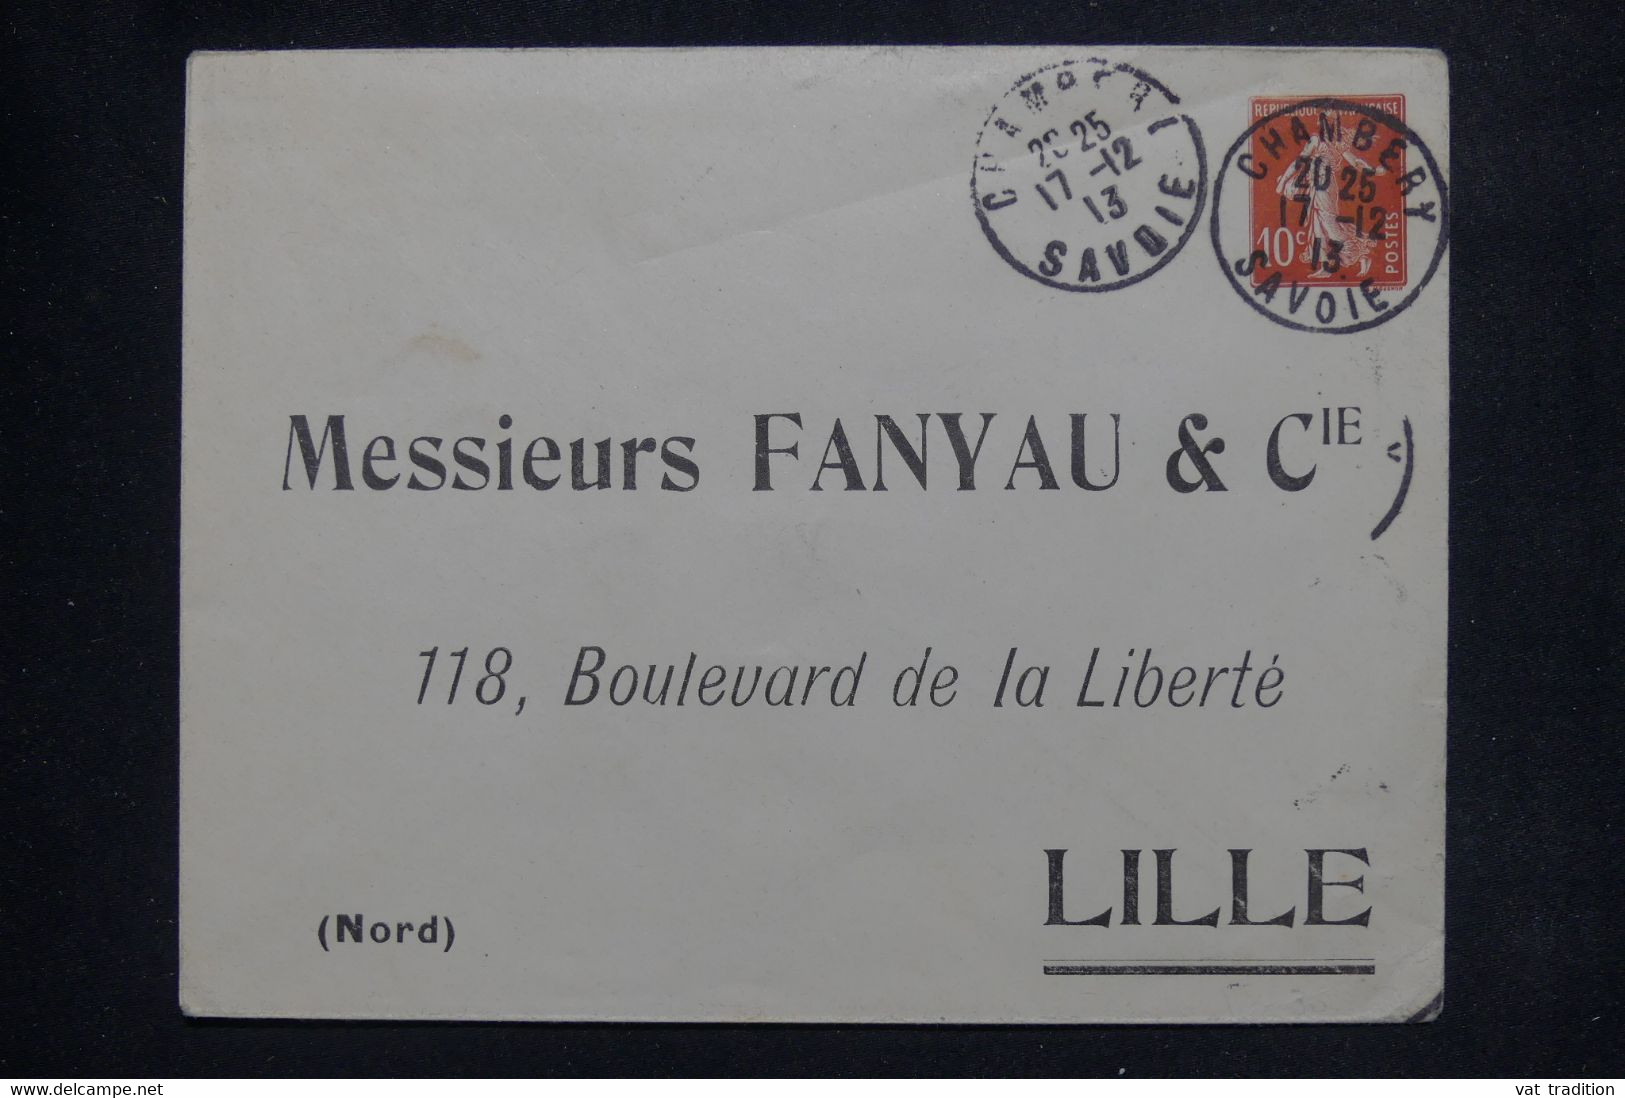 FRANCE - Entier Postal Semeuse ( Enveloppe ) De Chambery Pour Lille En 1913 Avec Repiquage Commercial - L 138143 - Umschläge Mit Aufdruck (vor 1995)